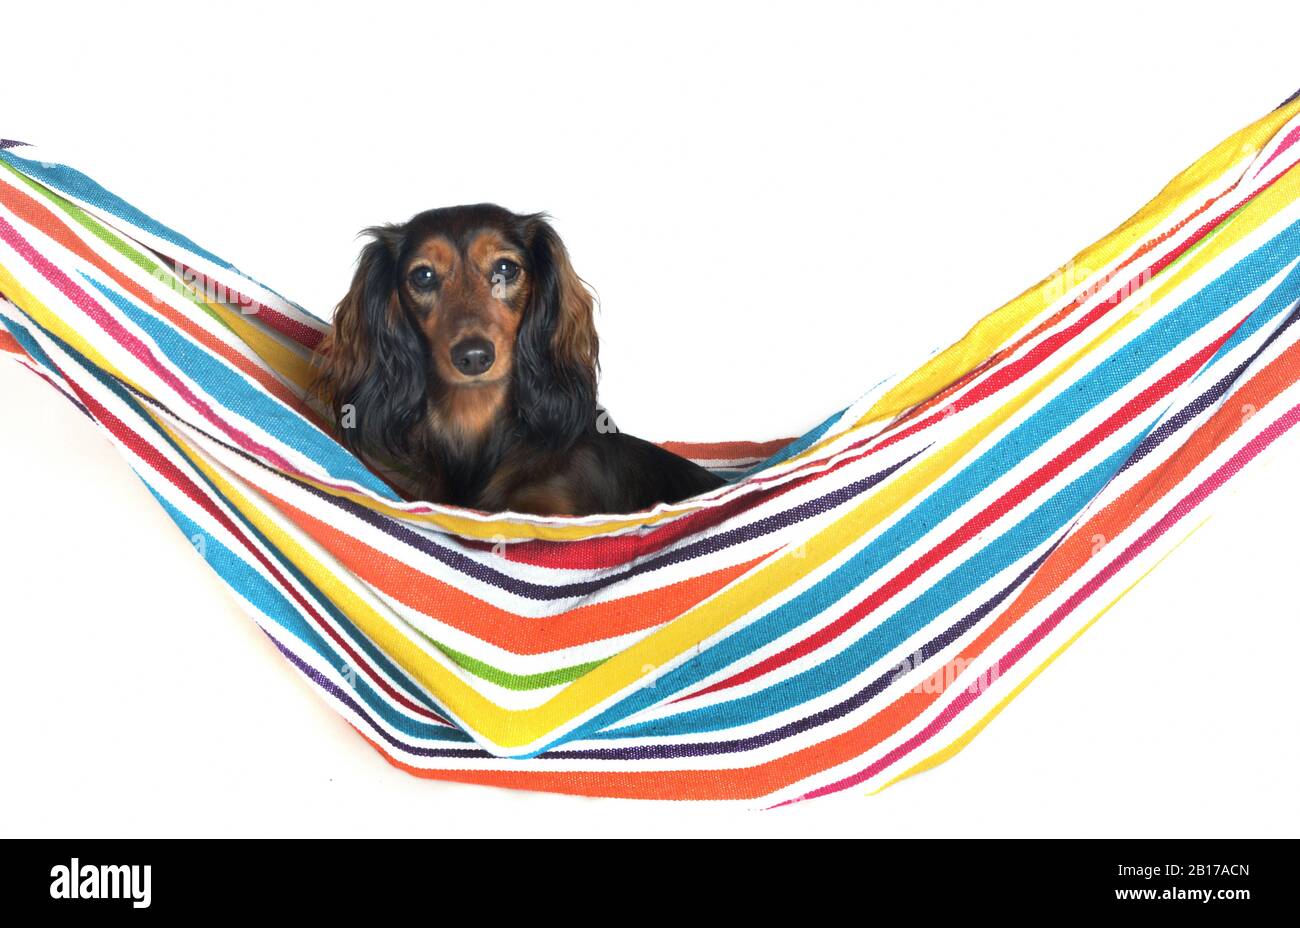 Langhaariger Dachshund, Langhaariger Wursthund, Haushund (Canis lupus f. familiaris), in Hängematte sitzender weiblicher Hund, Porträt Stockfoto